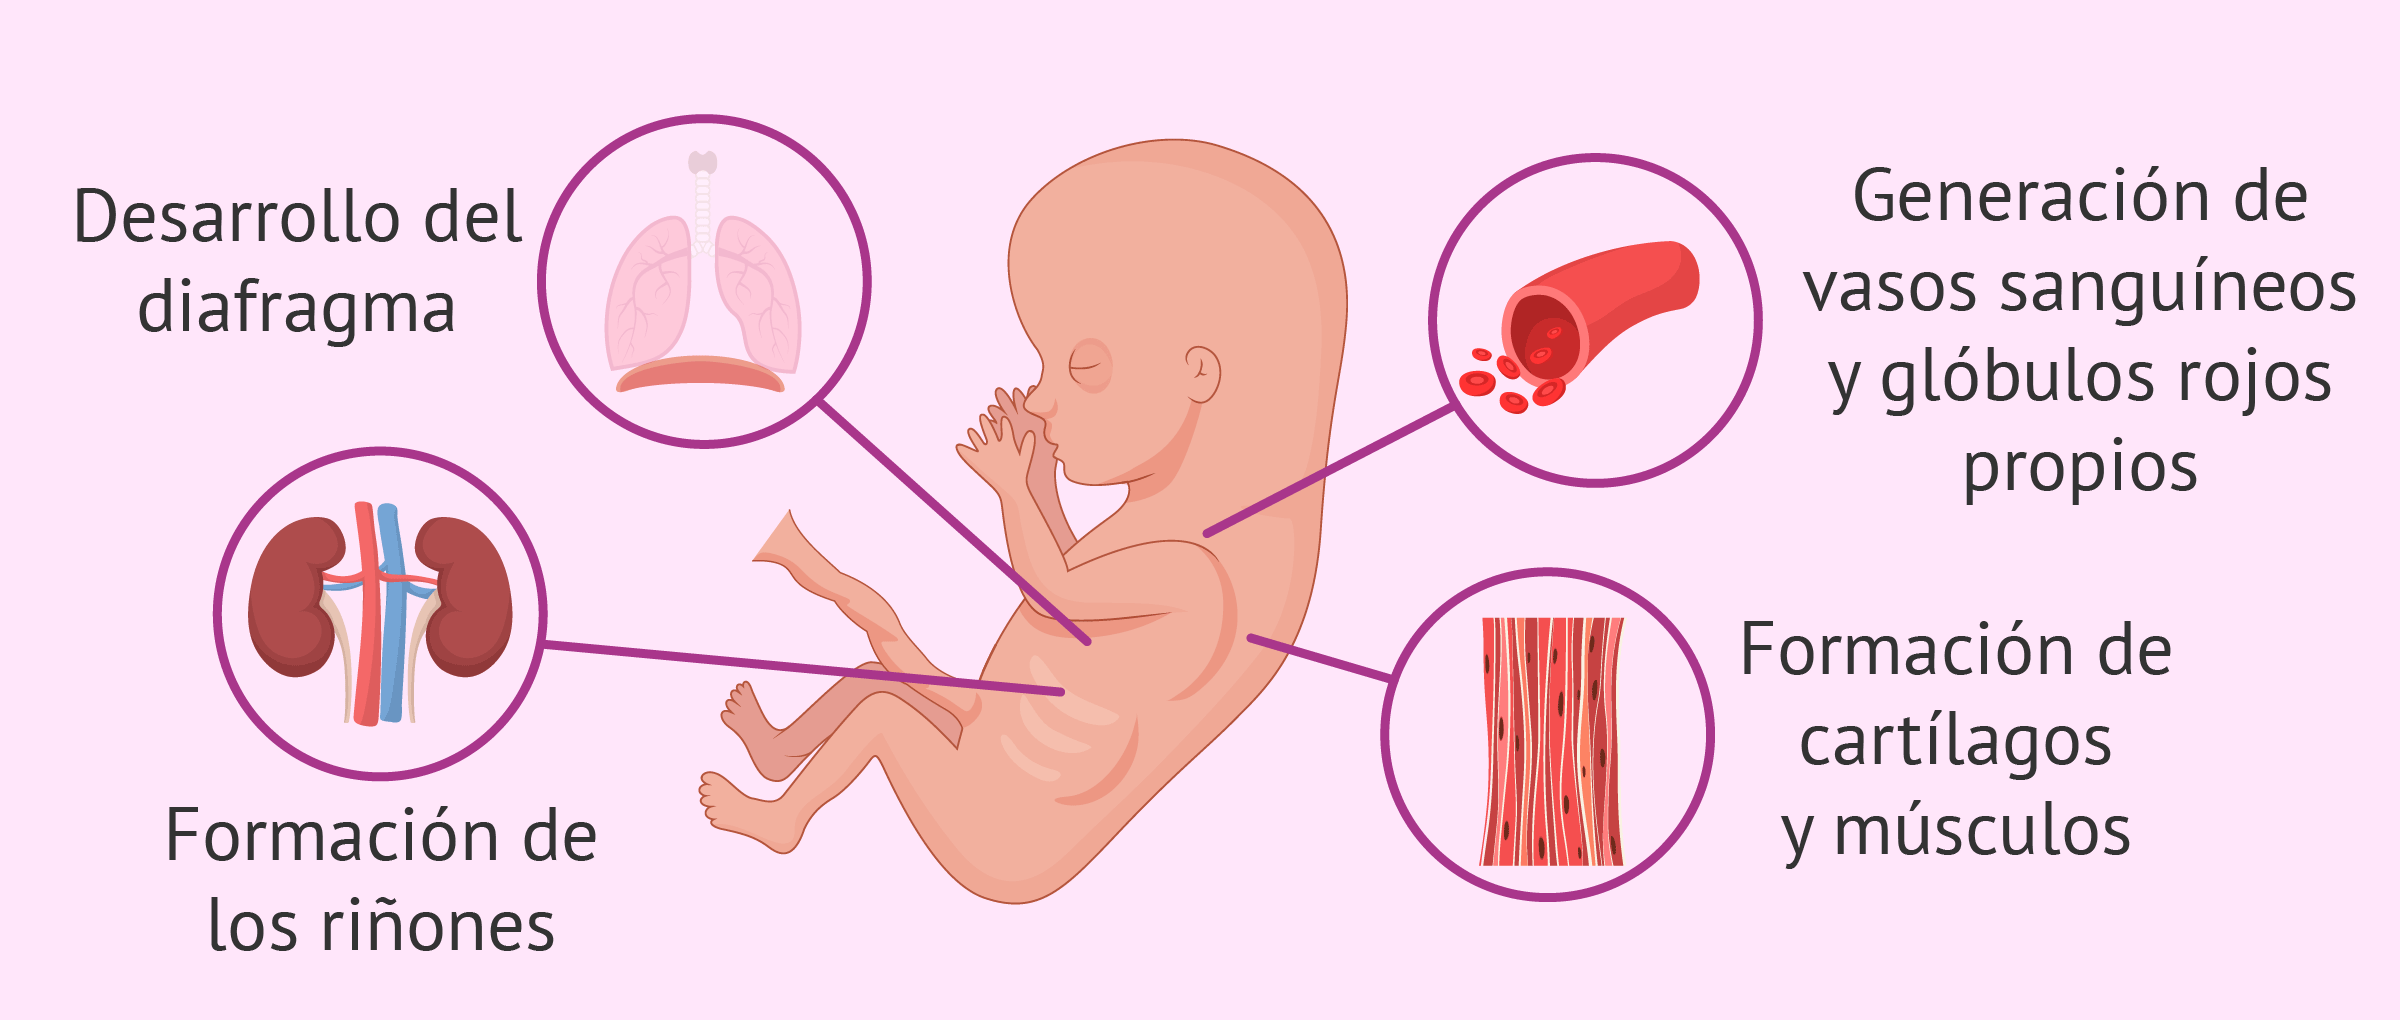 Desarrollo del feto con 11 semanas